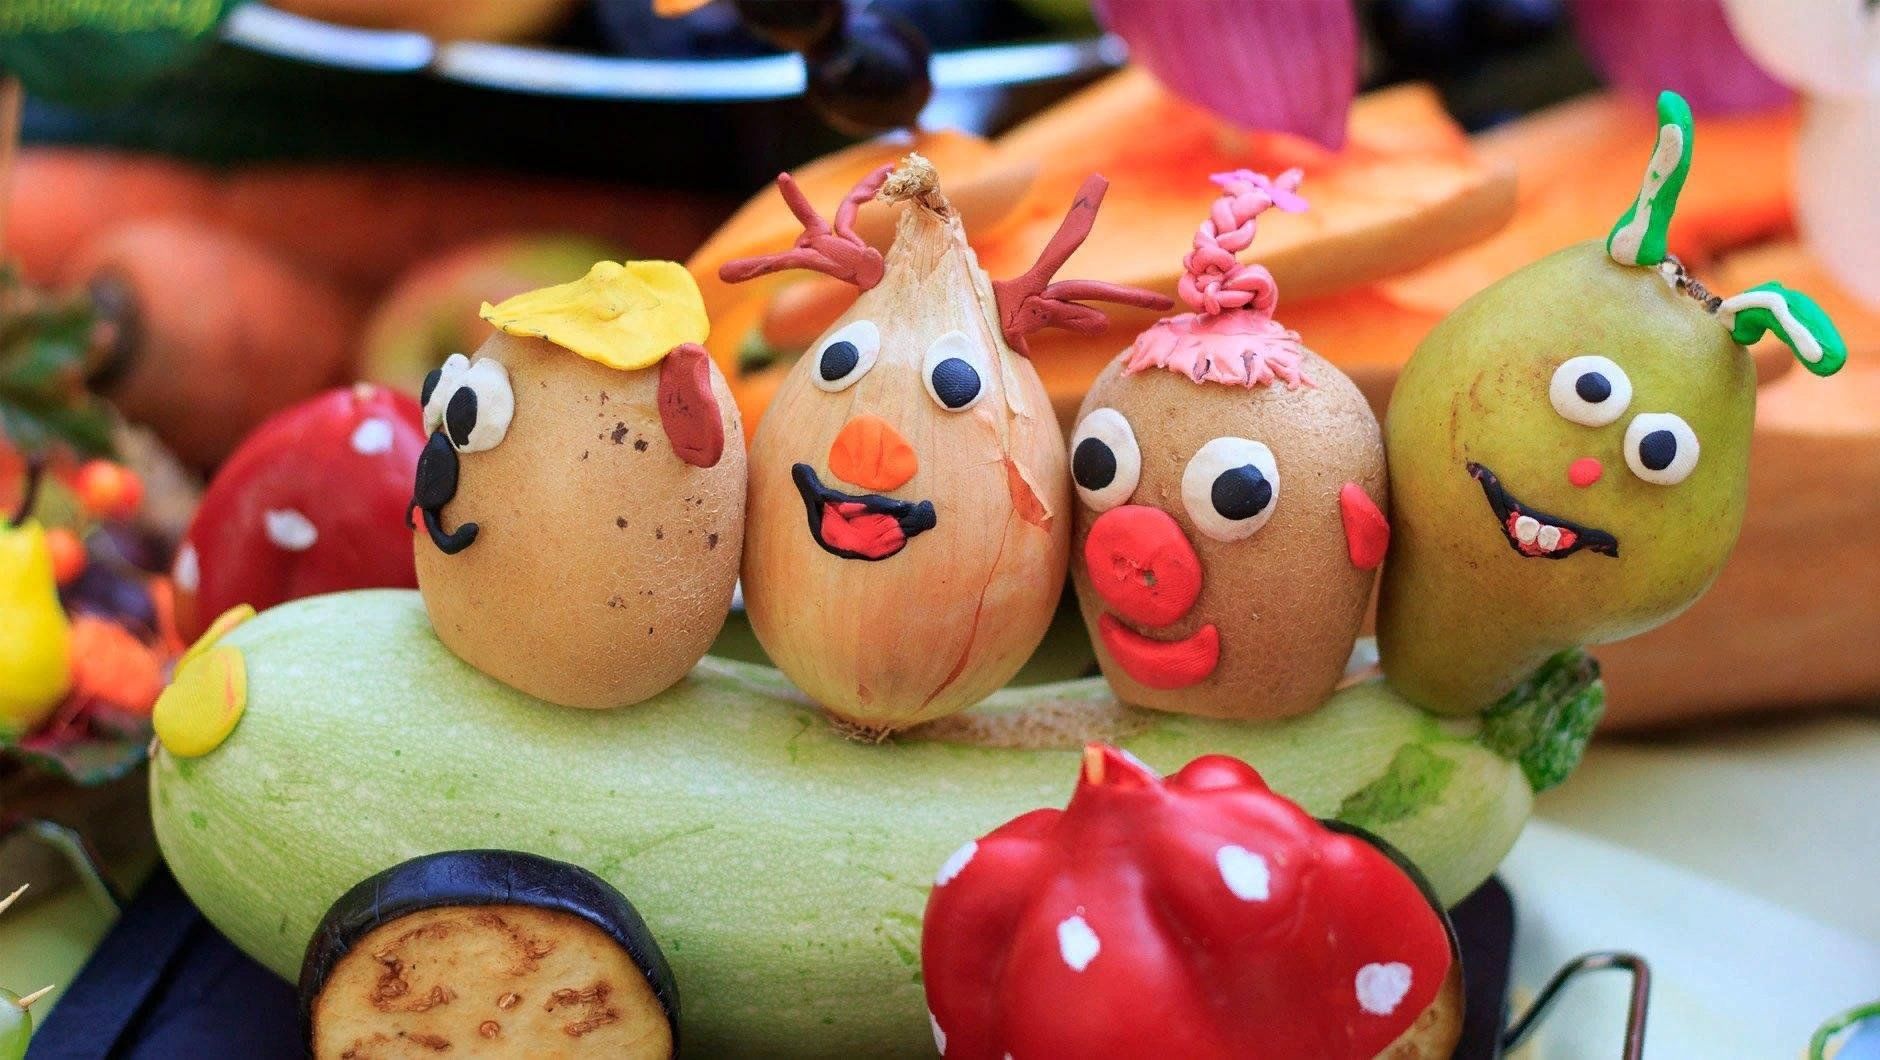 Красивые поделки из овощей и фруктов для детского сада своими руками